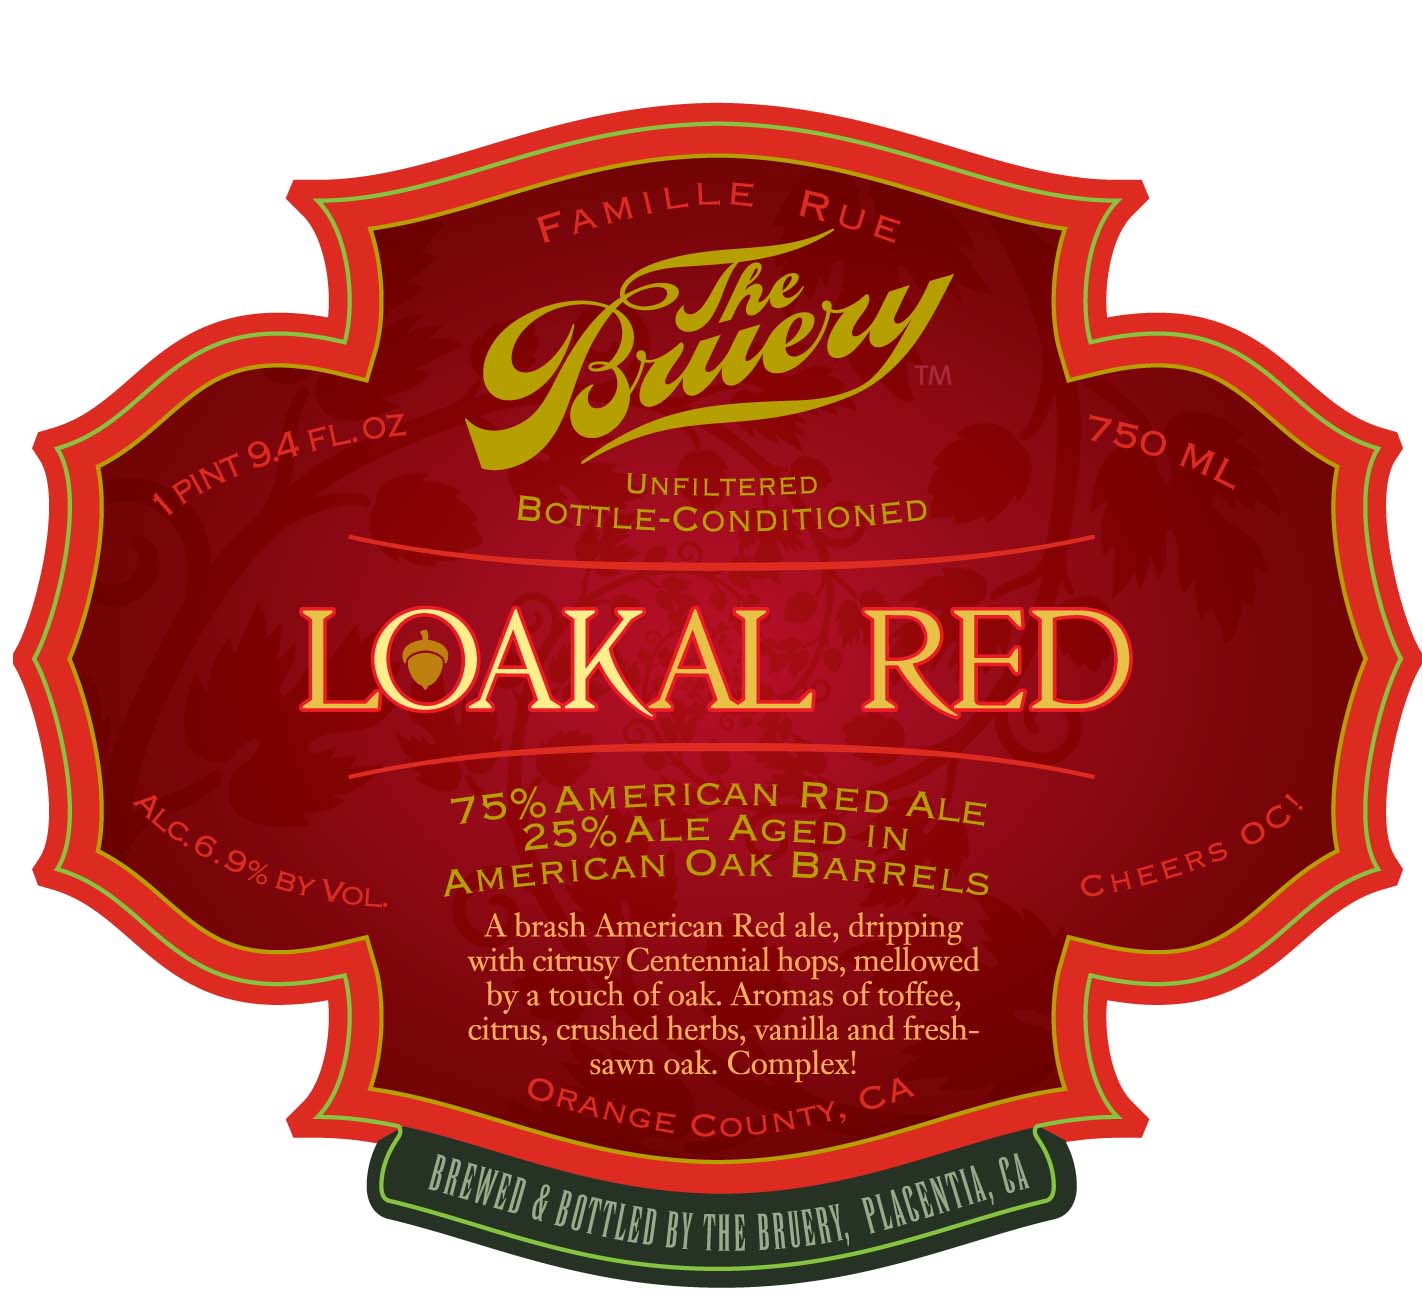 The Bruery Loakal Red